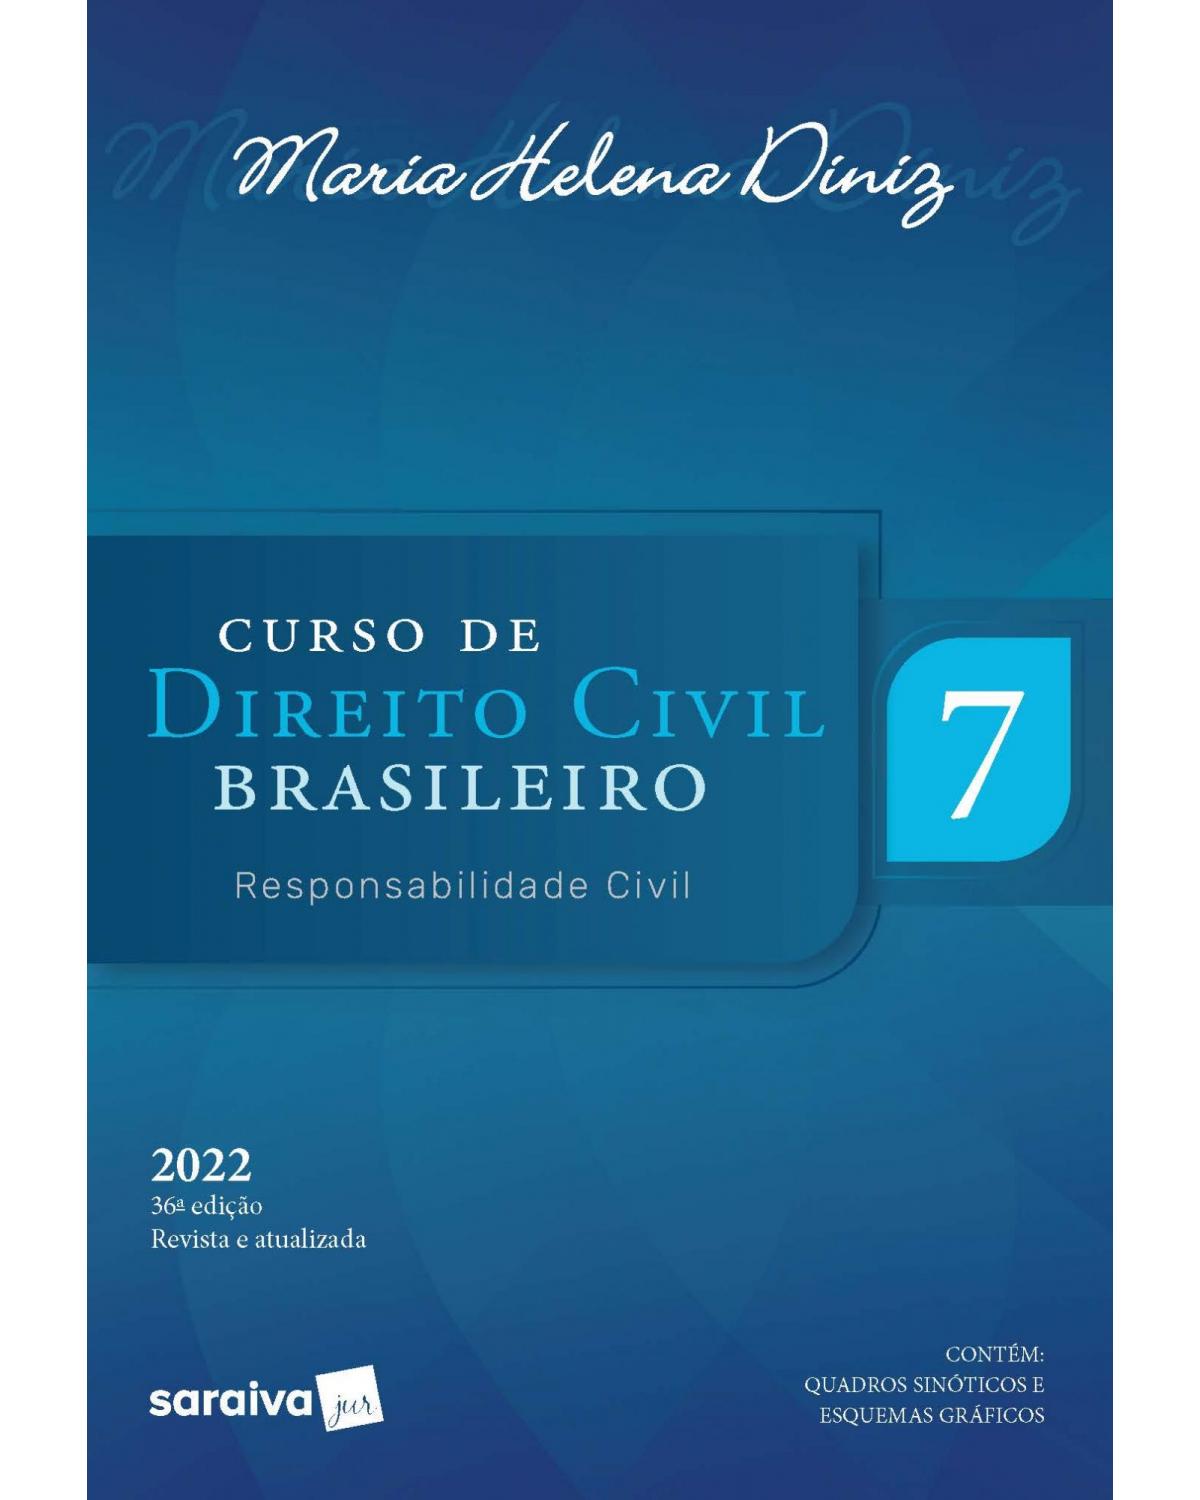 Curso de direito civil brasileiro: Responsabilidade civil - Volume 7 - 36ª Edição | 2022